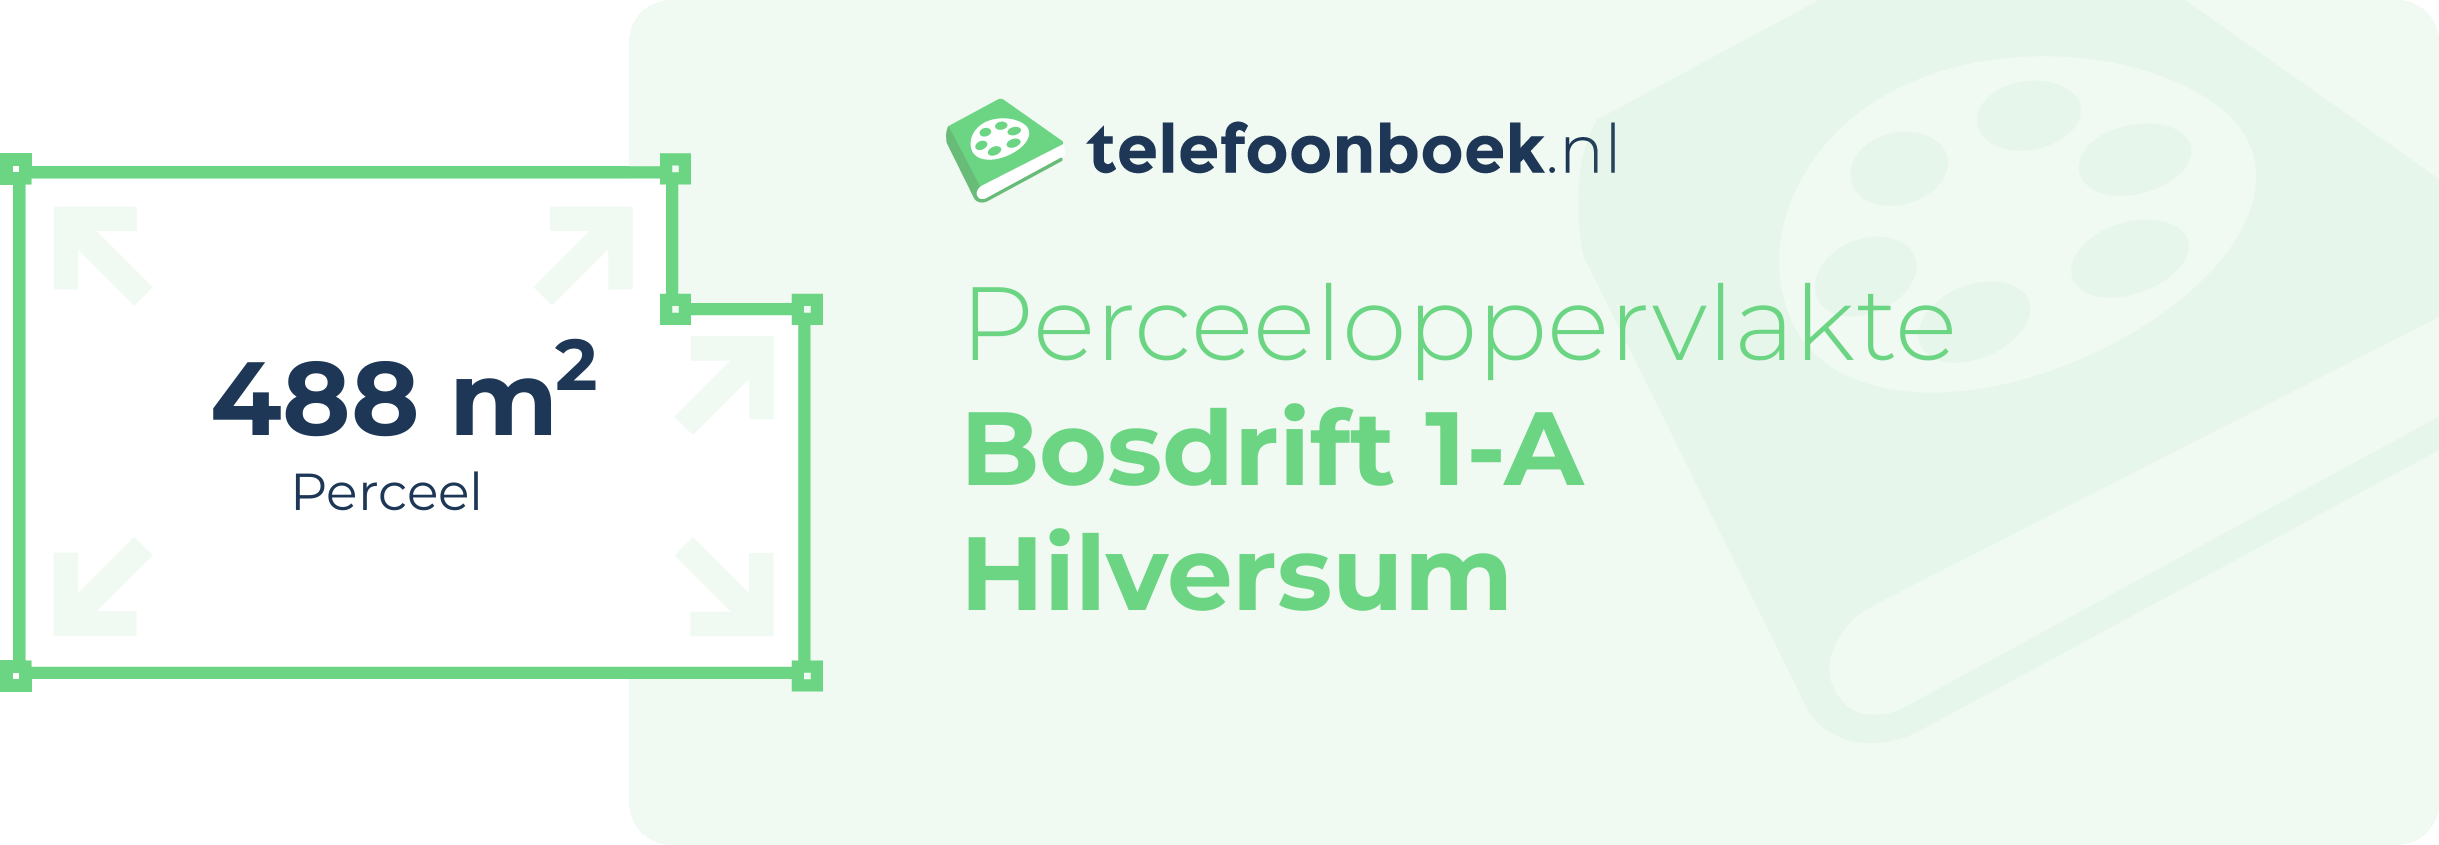 Perceeloppervlakte Bosdrift 1-A Hilversum